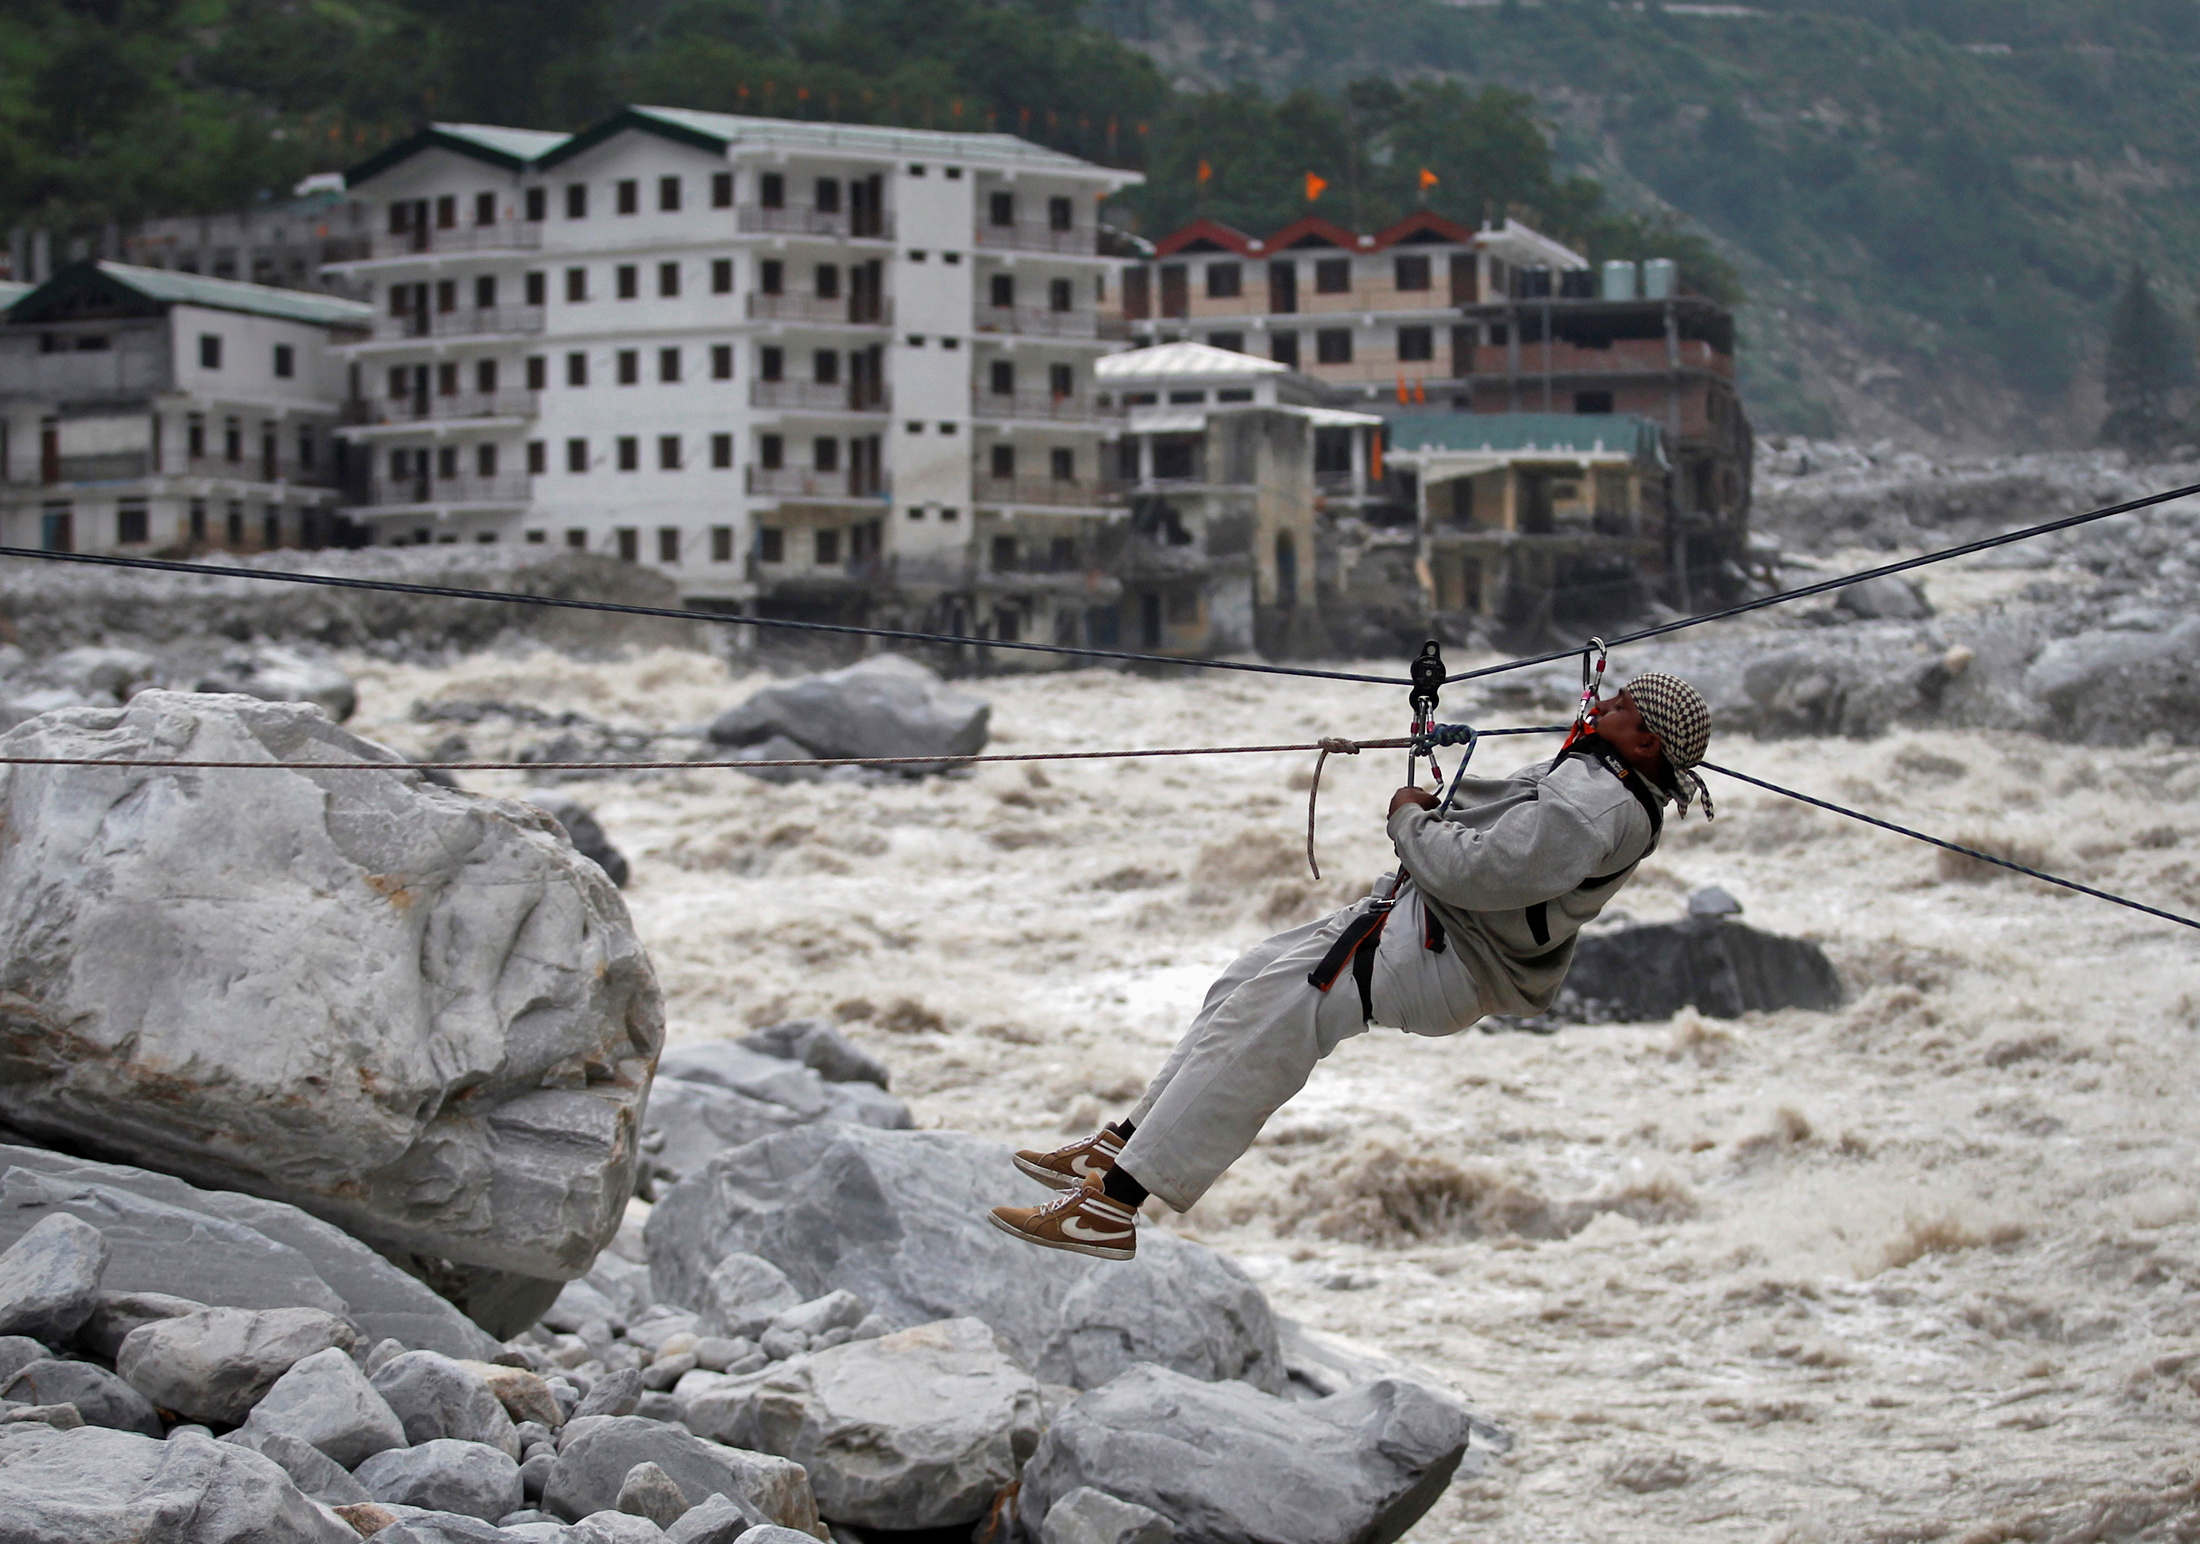 Un hombre es arrastrado a través de una cuerda para ponerse a salvo, mientras se ven los edificios dañados y el río Alaknanda en el fondo, durante una operación de rescate en Govindghat en el estado himalayo de Uttarakhand el 23 de junio de 2013.